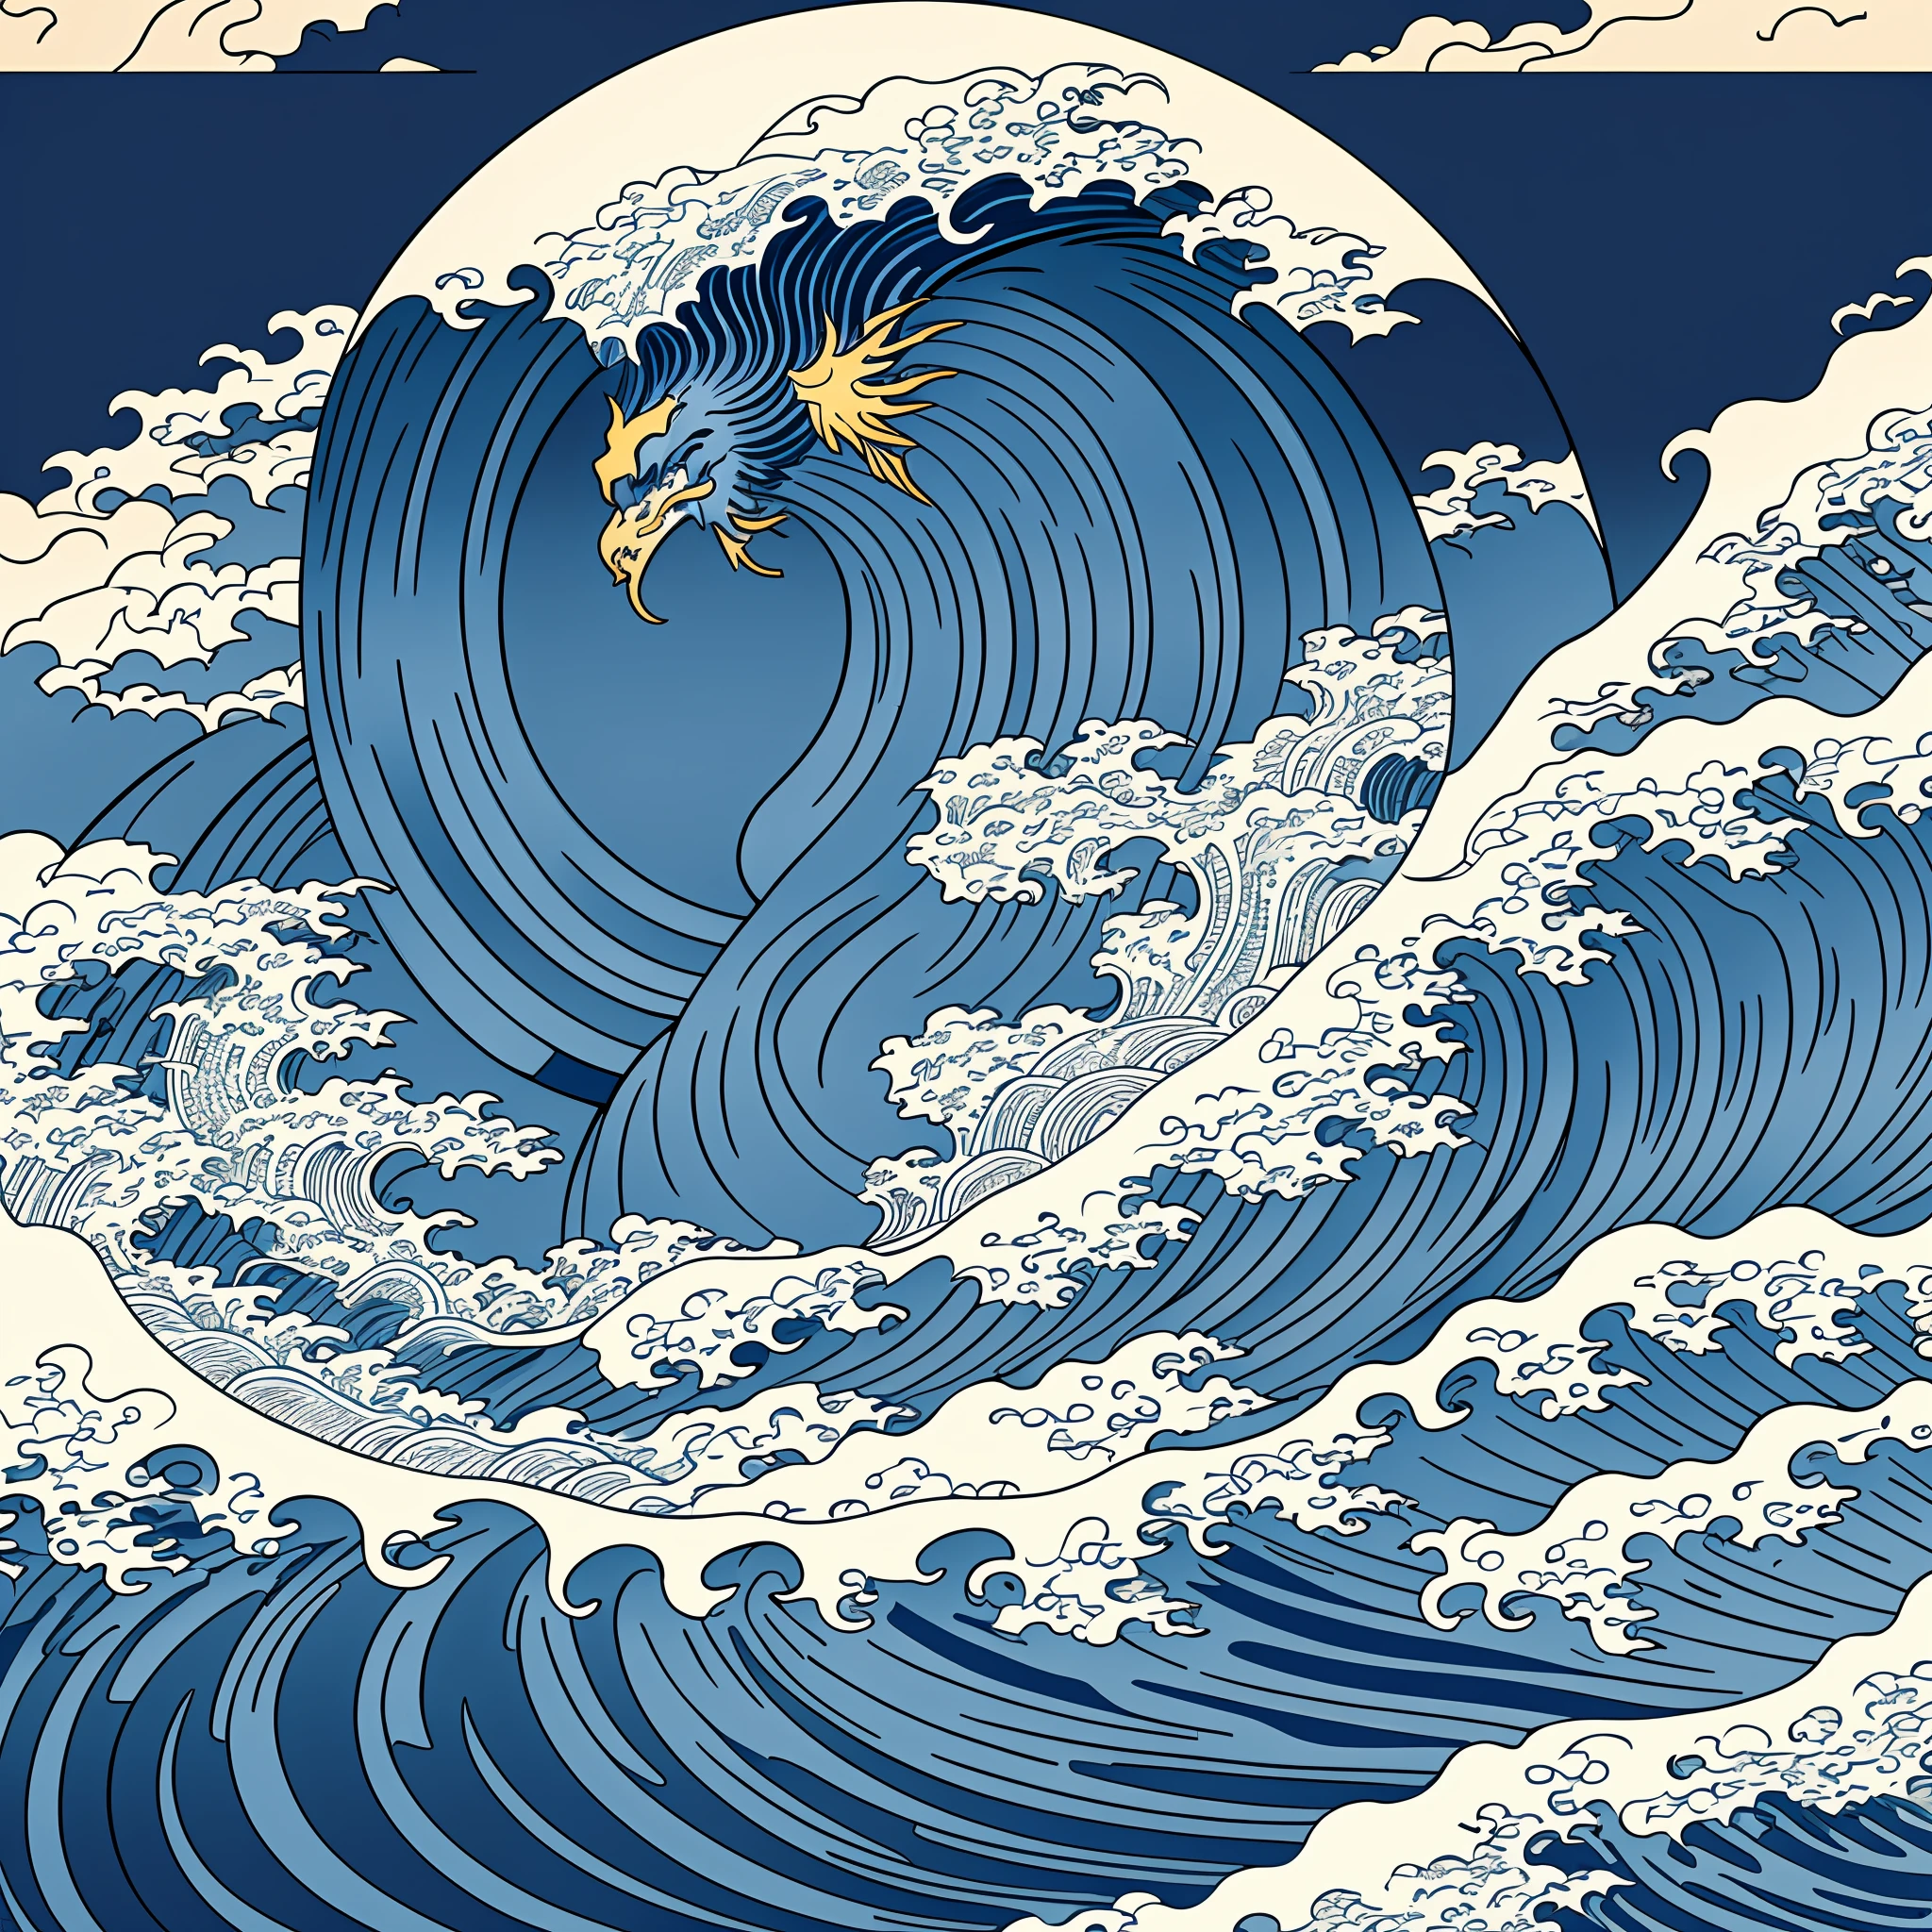 Design de arte em linha no estilo Katsushika Hokusai, Design de padrão de onda áspera azul escuro estilo Hokusai. A ponta da onda é a cabeça de um dragão, a mais alta qualidade, masterpiece high resolution Estilo Ukiyo-e. Estilo artístico, 1:1, Estilo Ukiyo-e, arte 3D vetor, Adobe Ilustrador, Resolução 4k, fundos lindos apenas